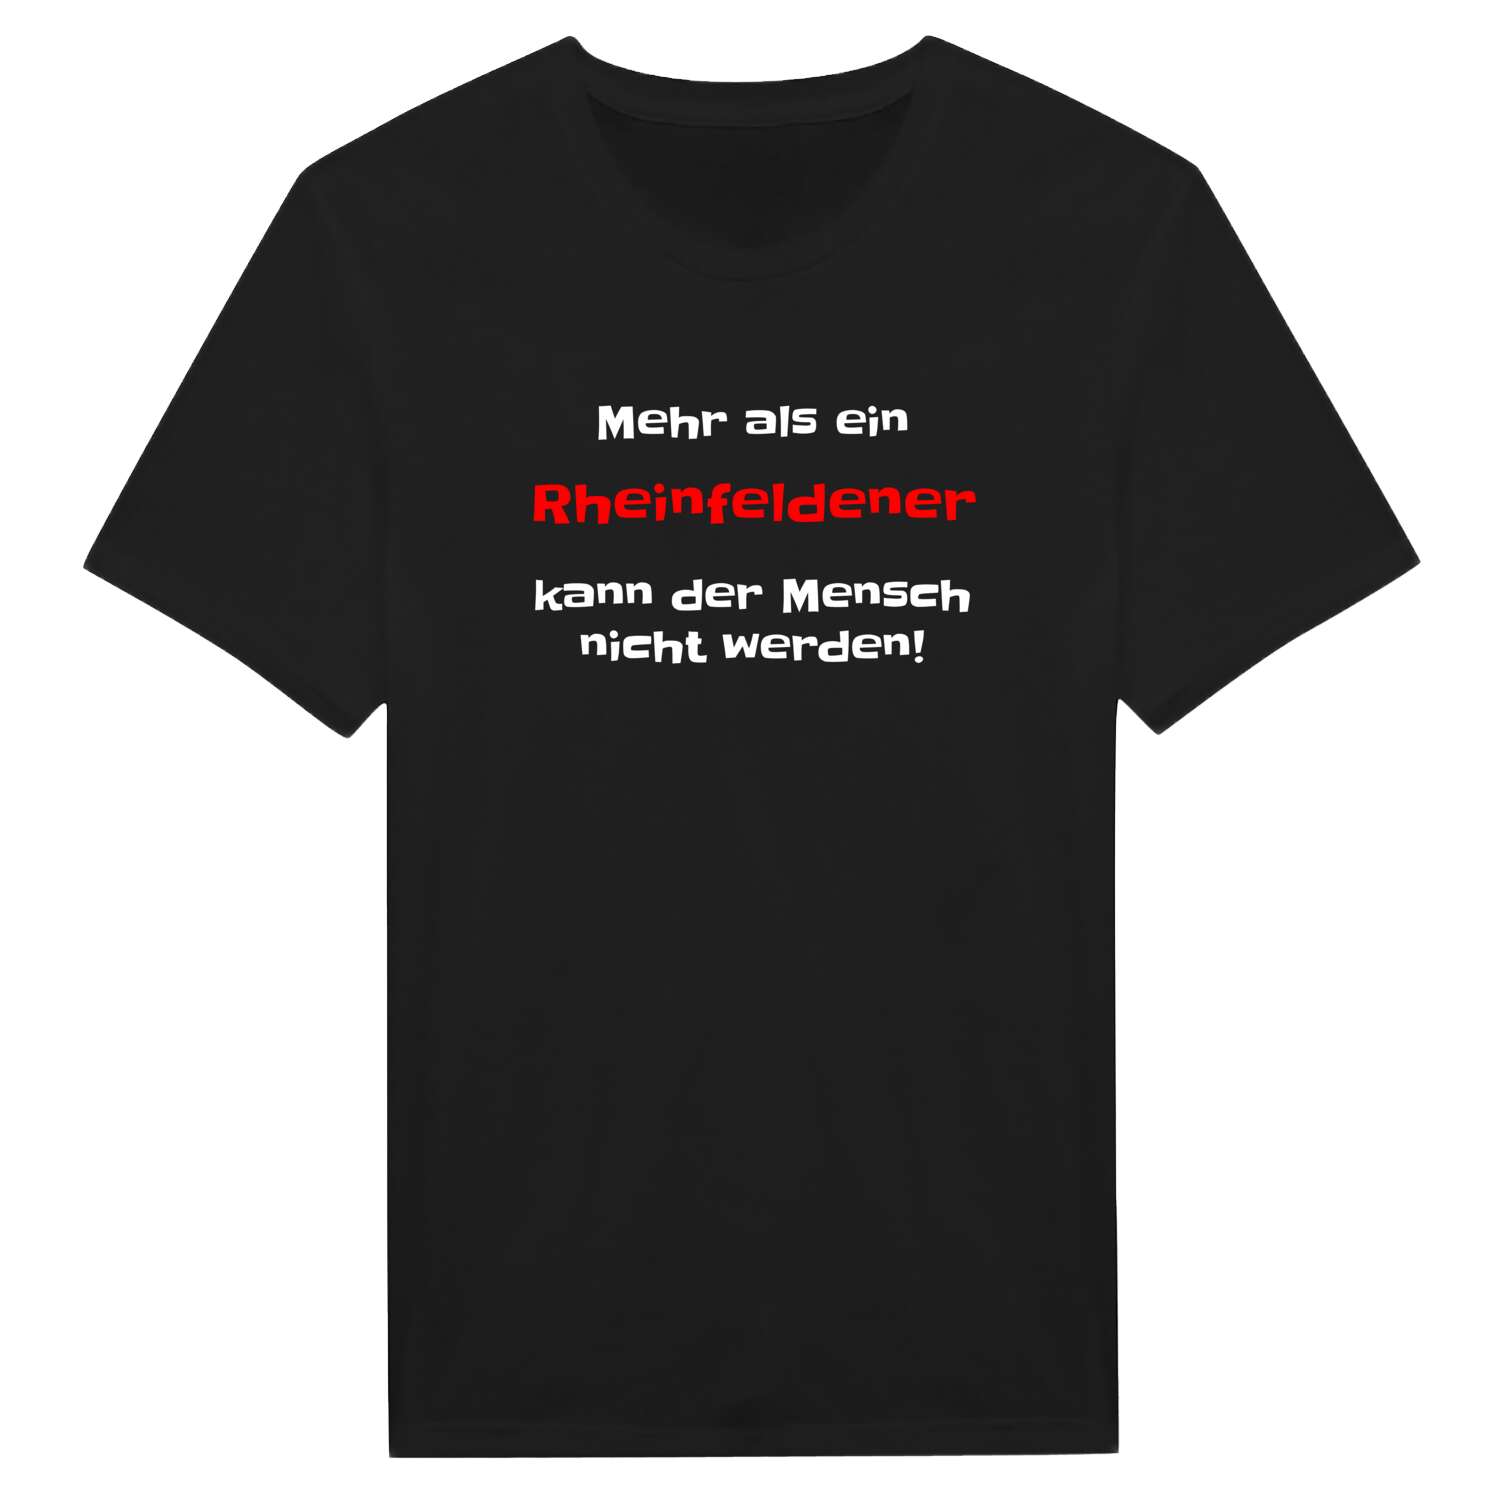 Rheinfelden T-Shirt »Mehr als ein«